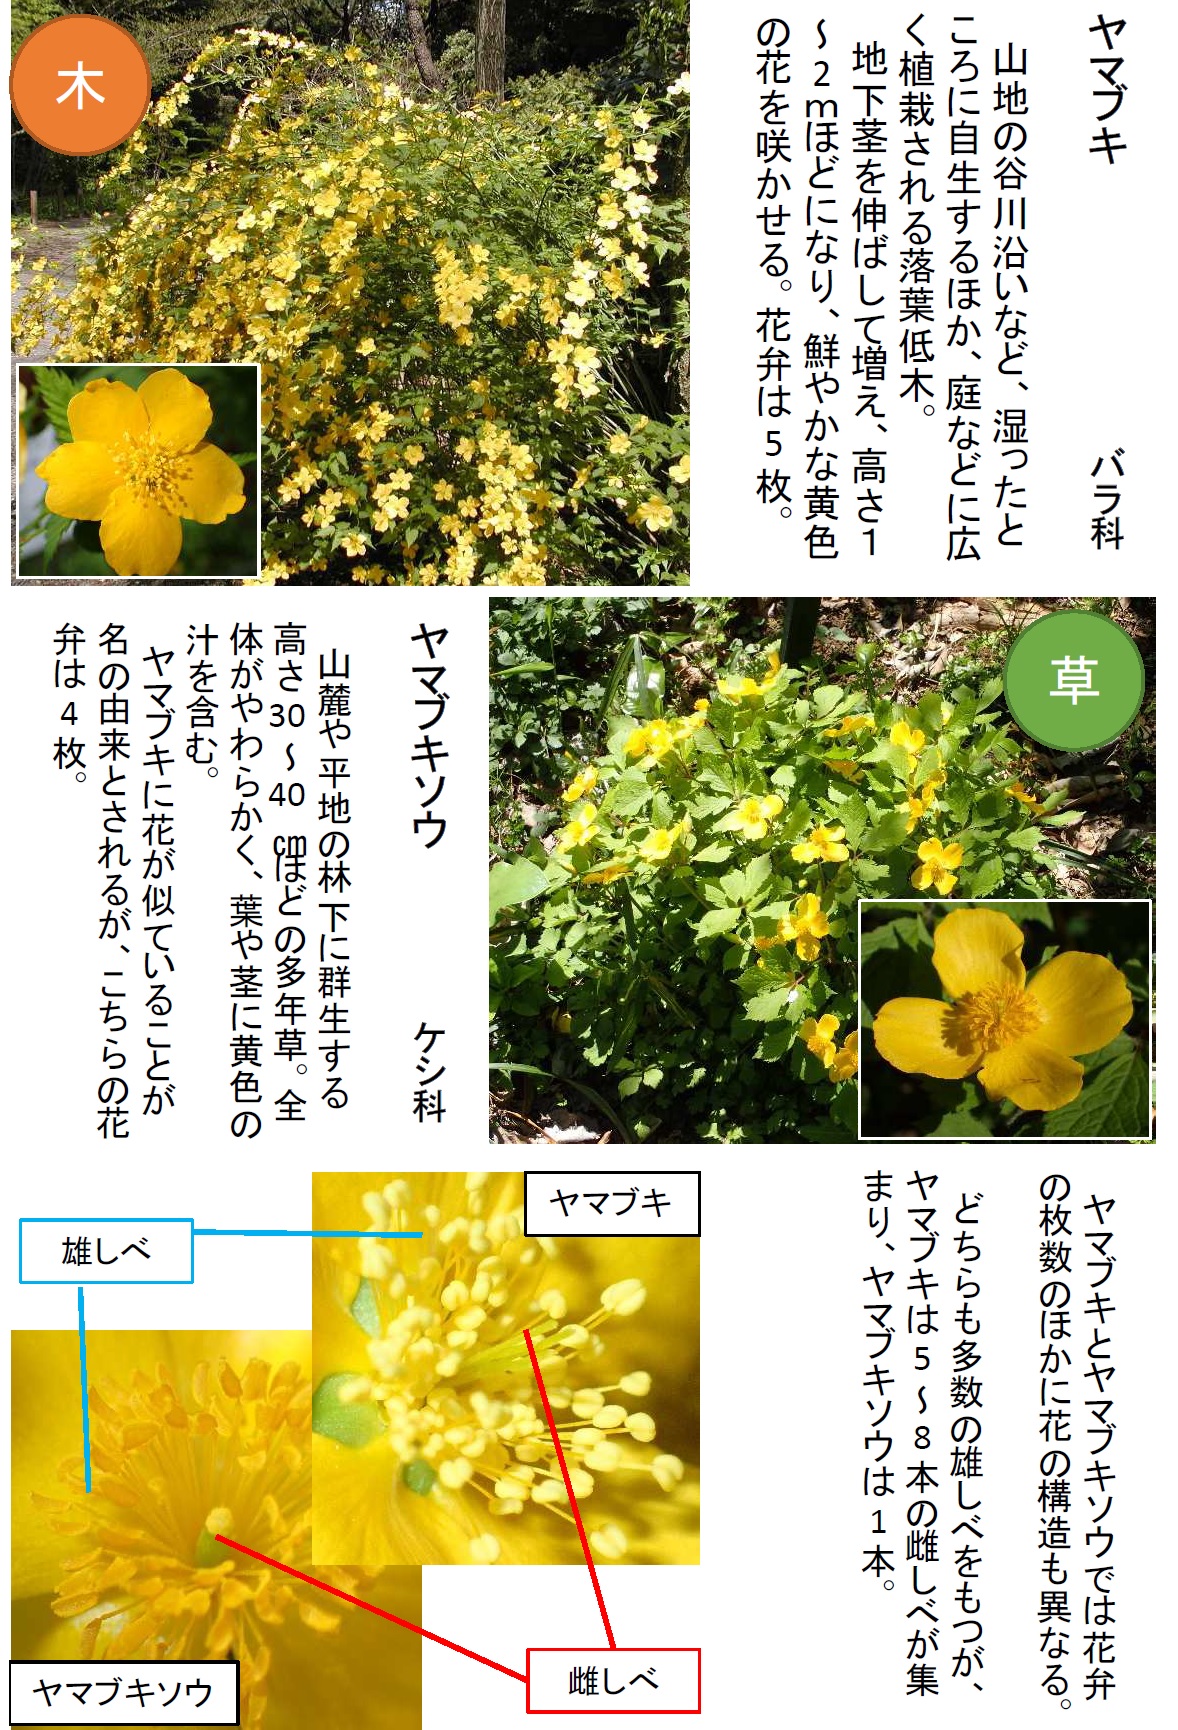 ヤマブキとヤマブキソウの花の比較